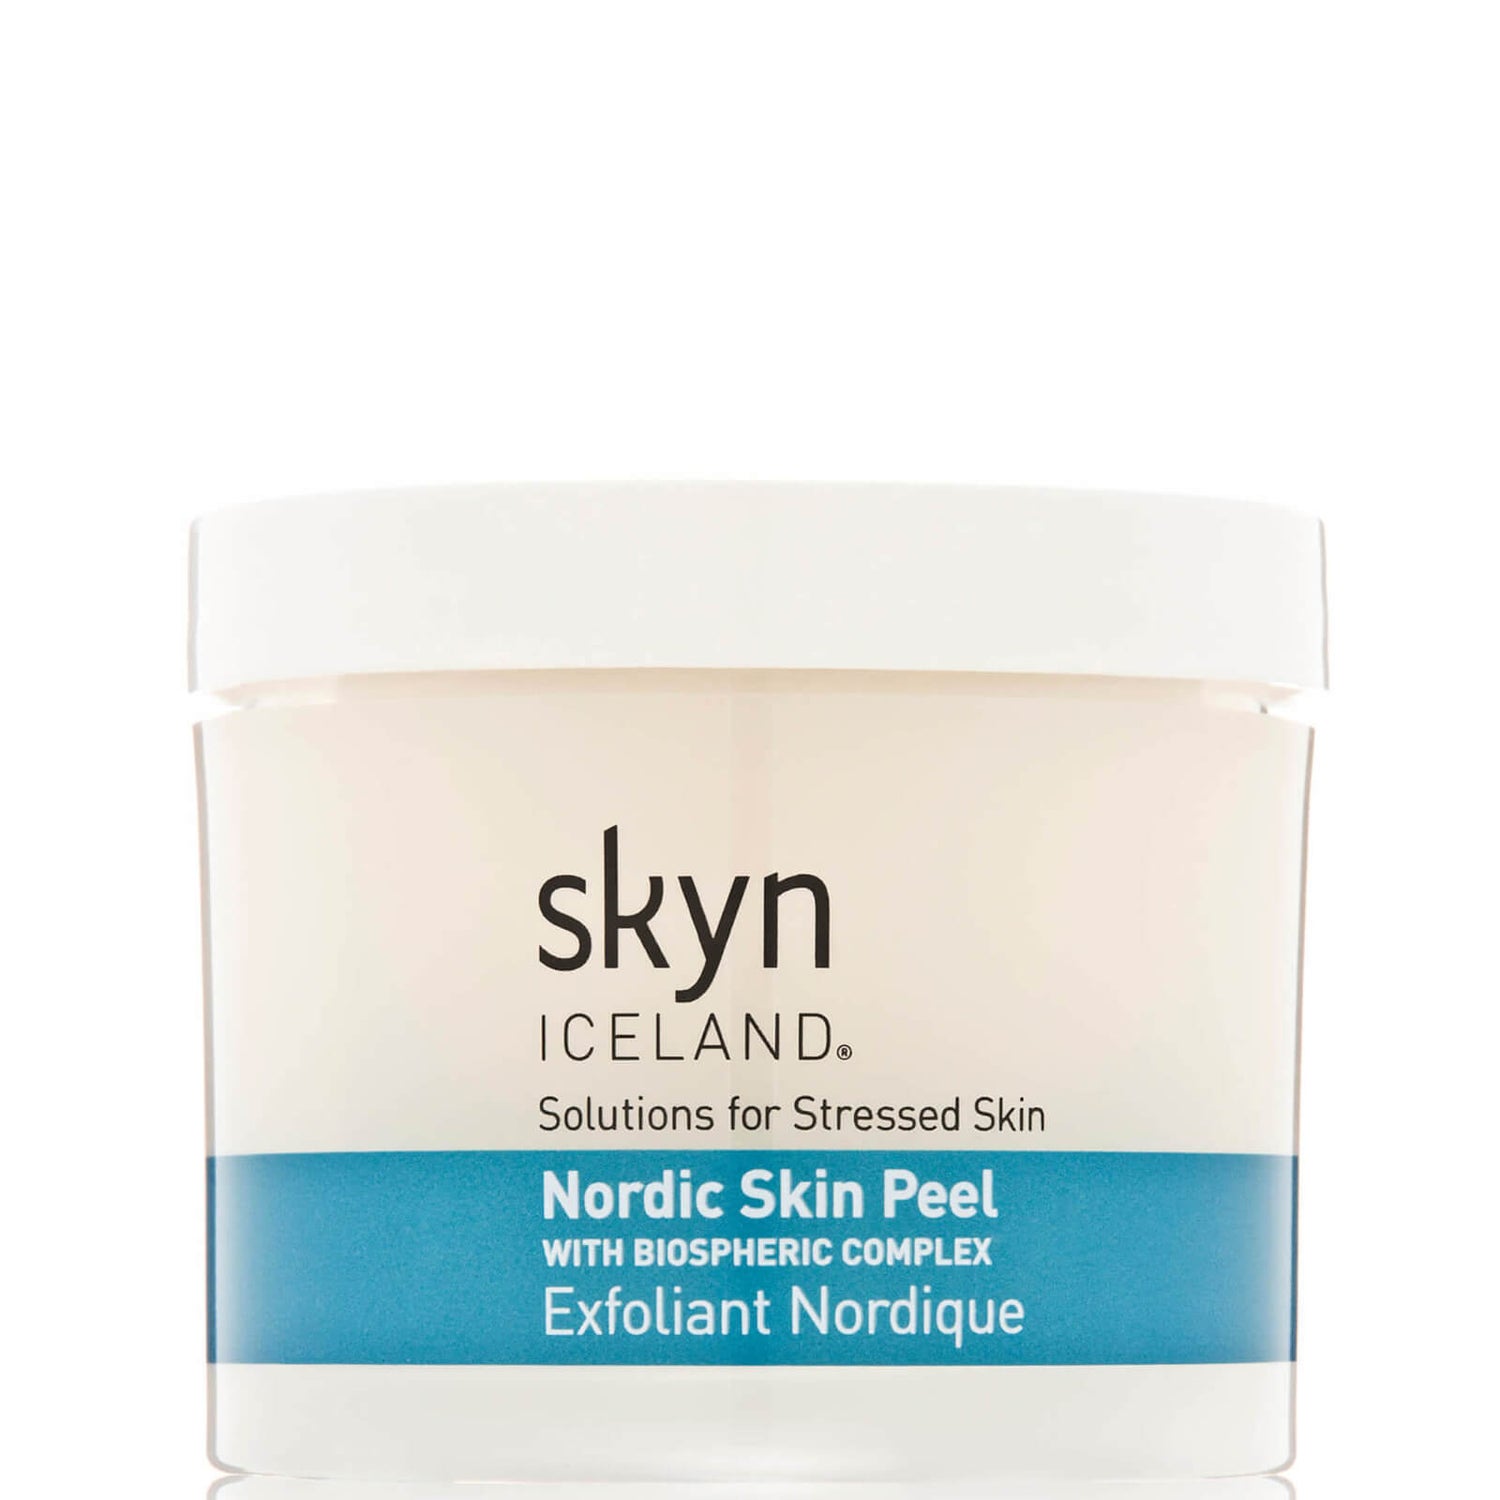 skyn ICELAND Nordic Skin Peel (60 piece)